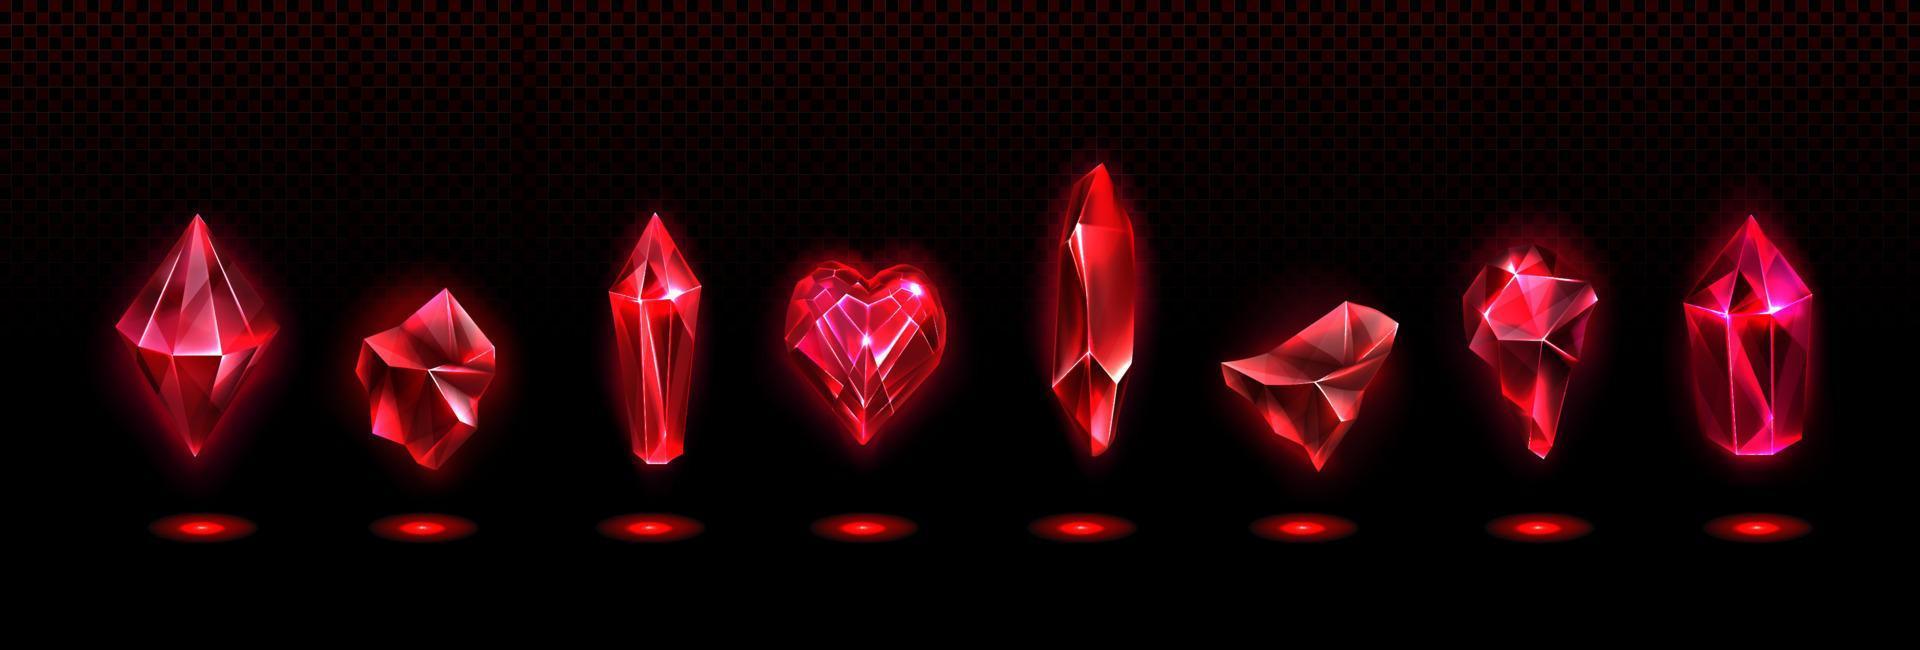 röd magi kristaller, glas eller pärla stenar, hjärta vektor